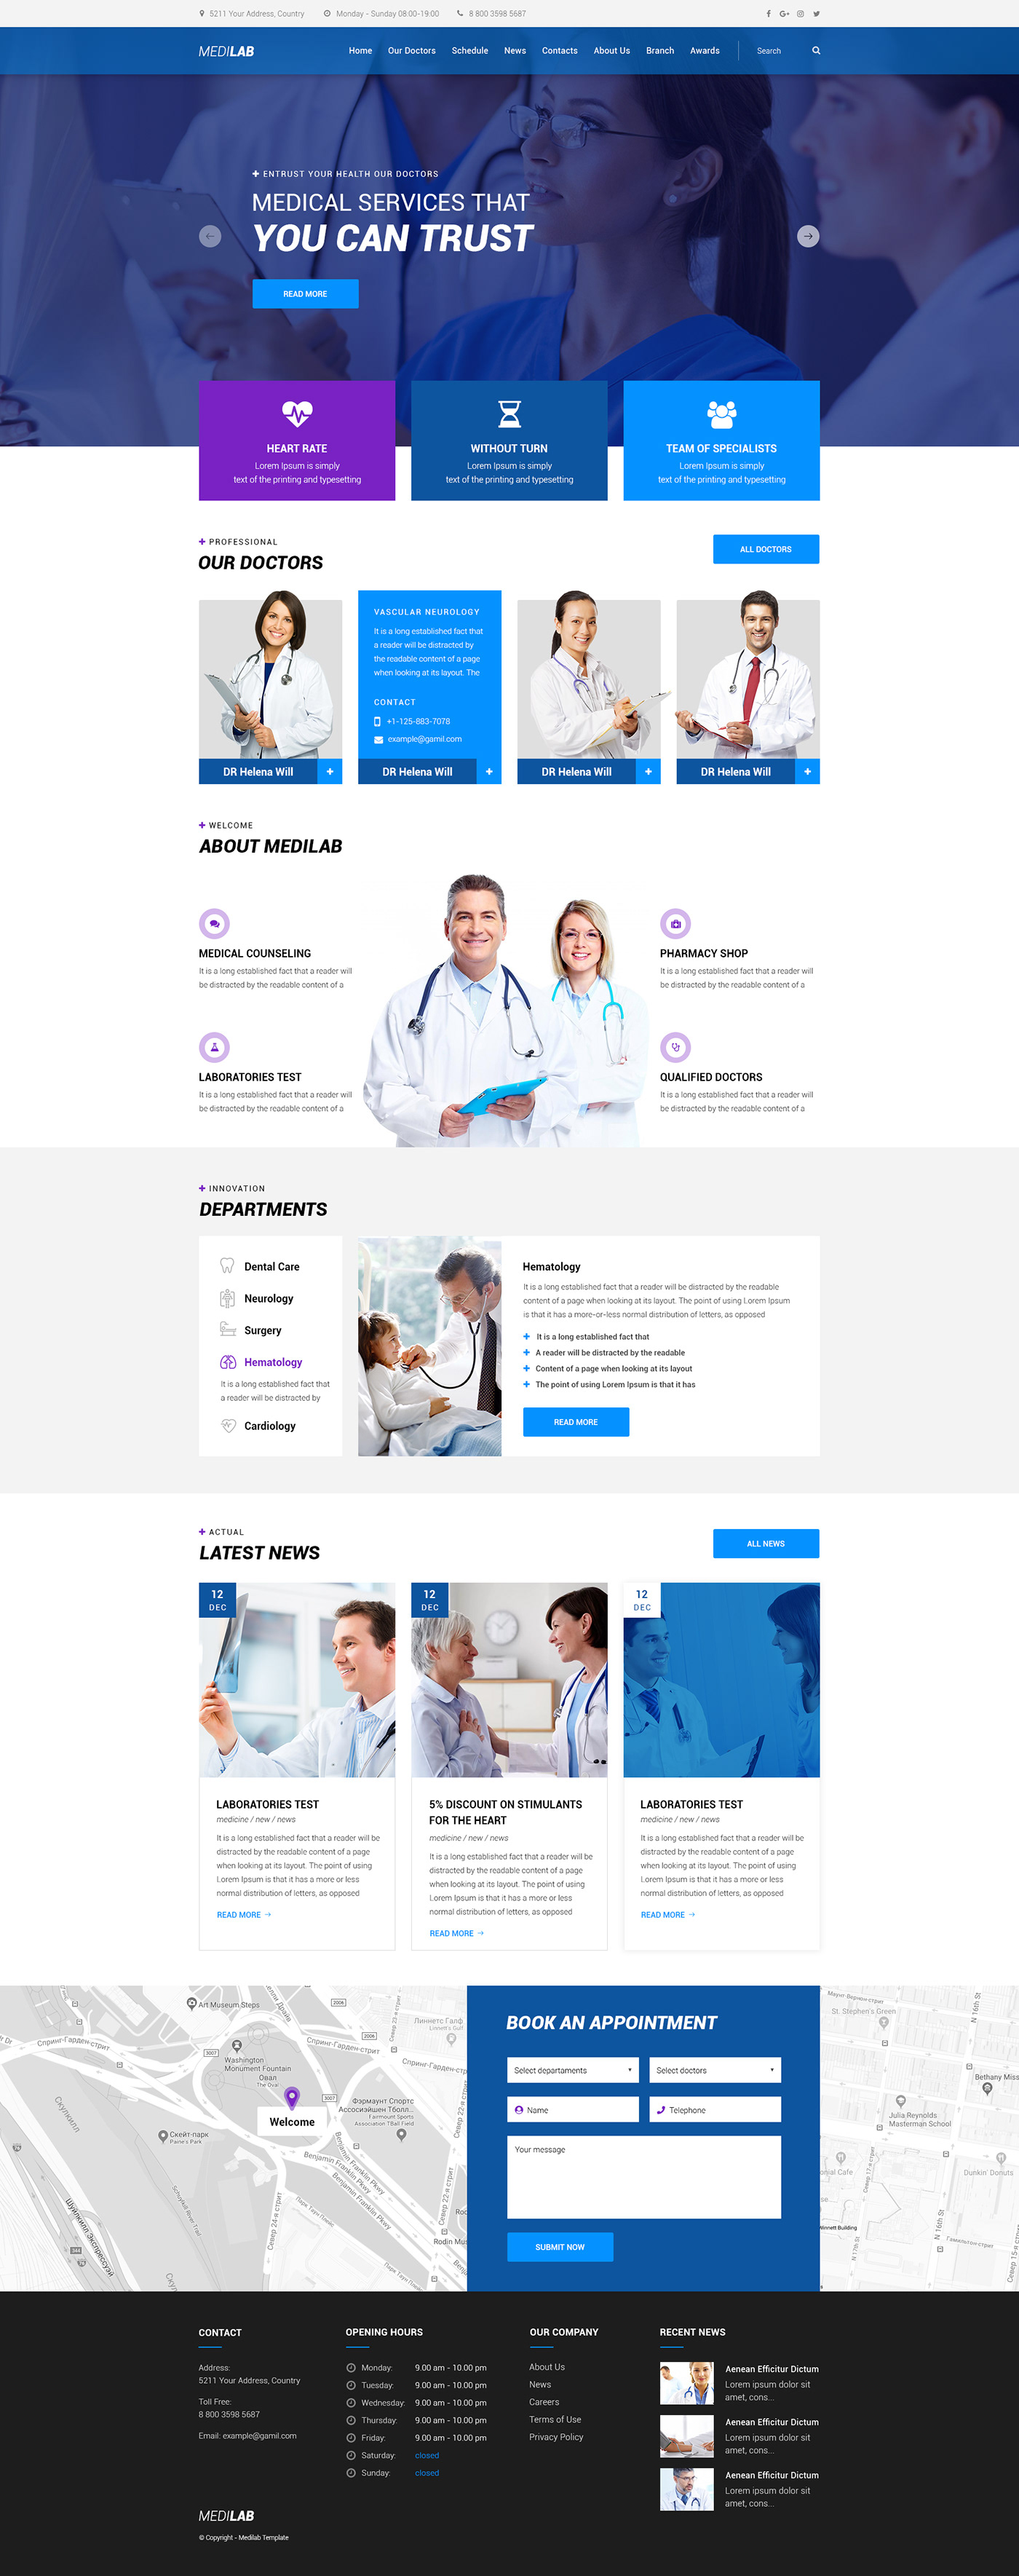 UI ux design webdesgin art blue fiolet medical